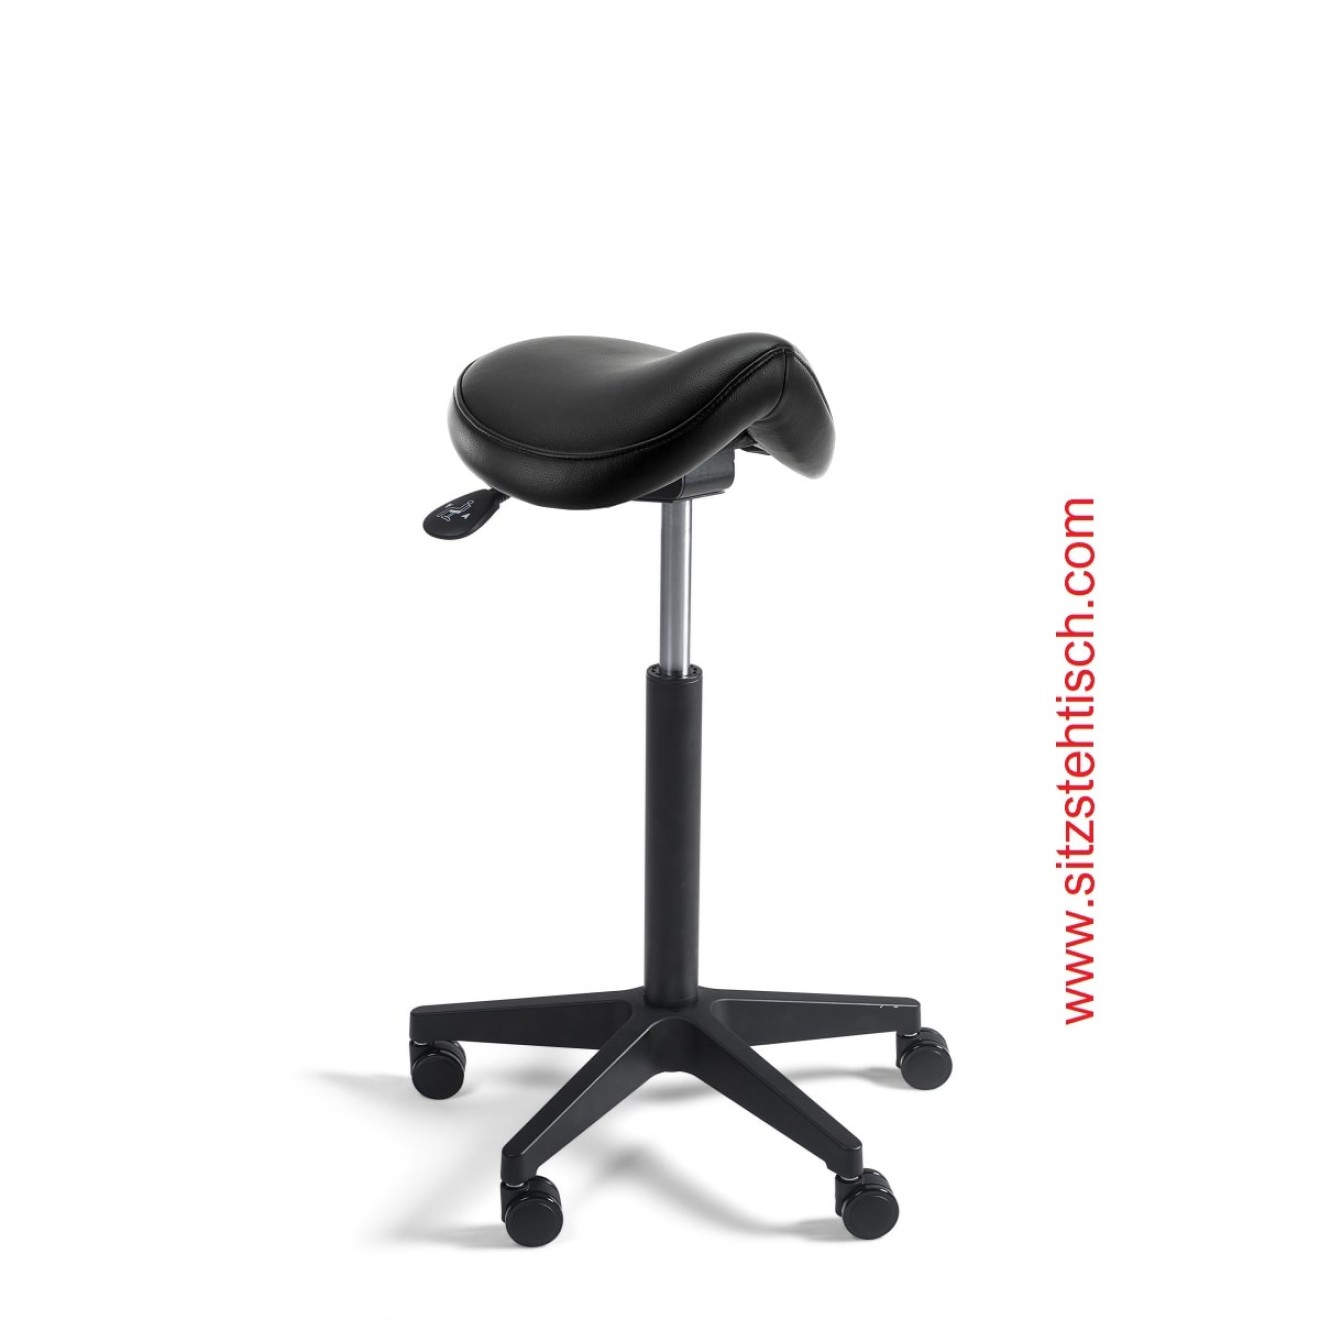 Sattelhocker Comfort mit normalen Sitz - Sitzhöhen- und Sitzwinkelverstellung - Bezug Kunstleder schwarz - Belastbarkeit bis 125 kg - 5 Jahre Garantie - 107232